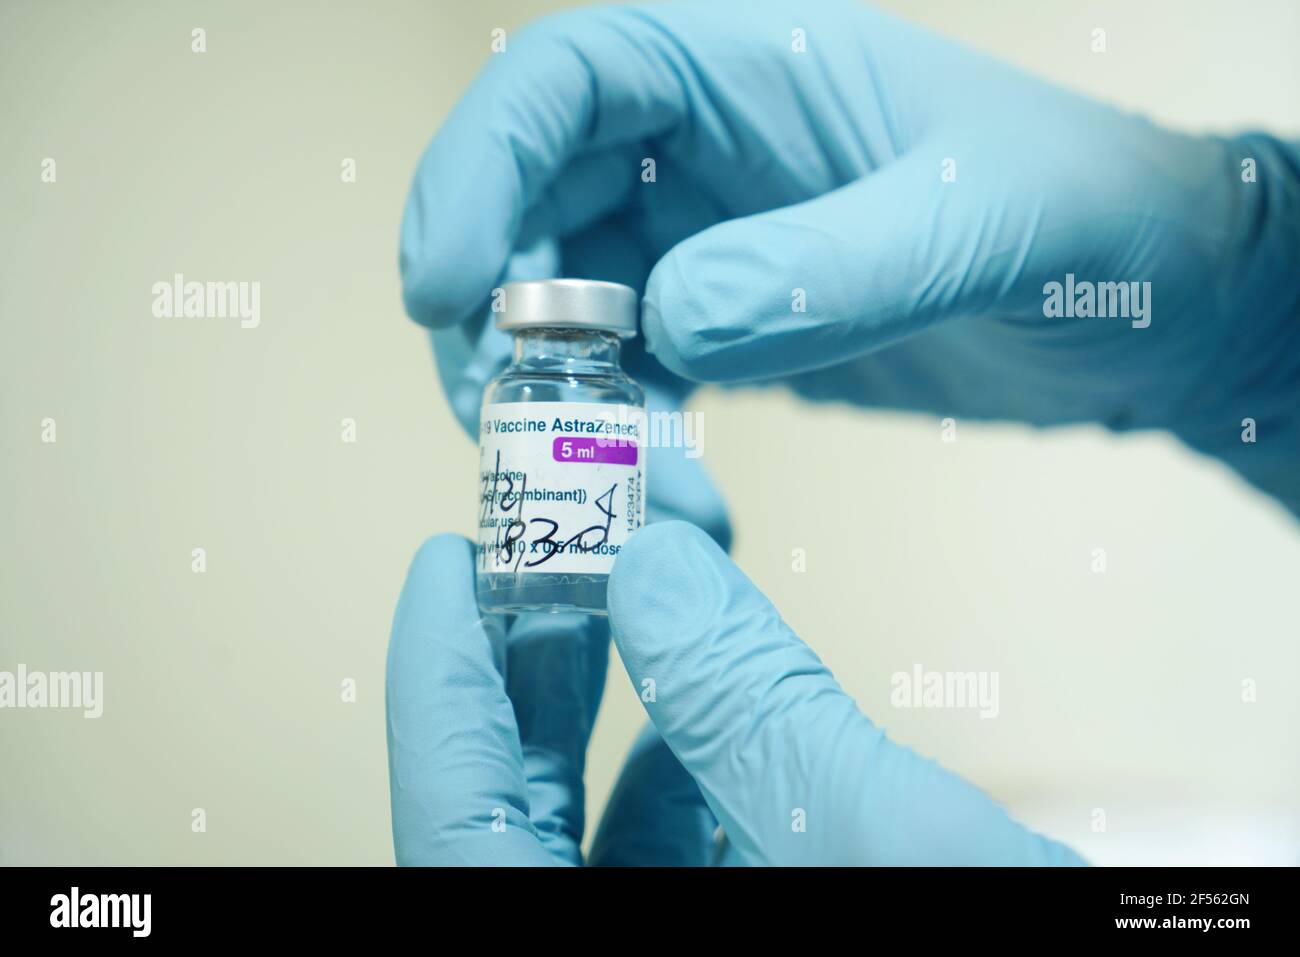 Fläschchen mit COVID-19-Impfstoff, hergestellt von AstraZeneca. Die Hand des Arztes in einem medizinischen Handschuh hält eine Flasche mit einem Coronavirus-Impfstoff. Selektiver Fokus. Turin, Stockfoto